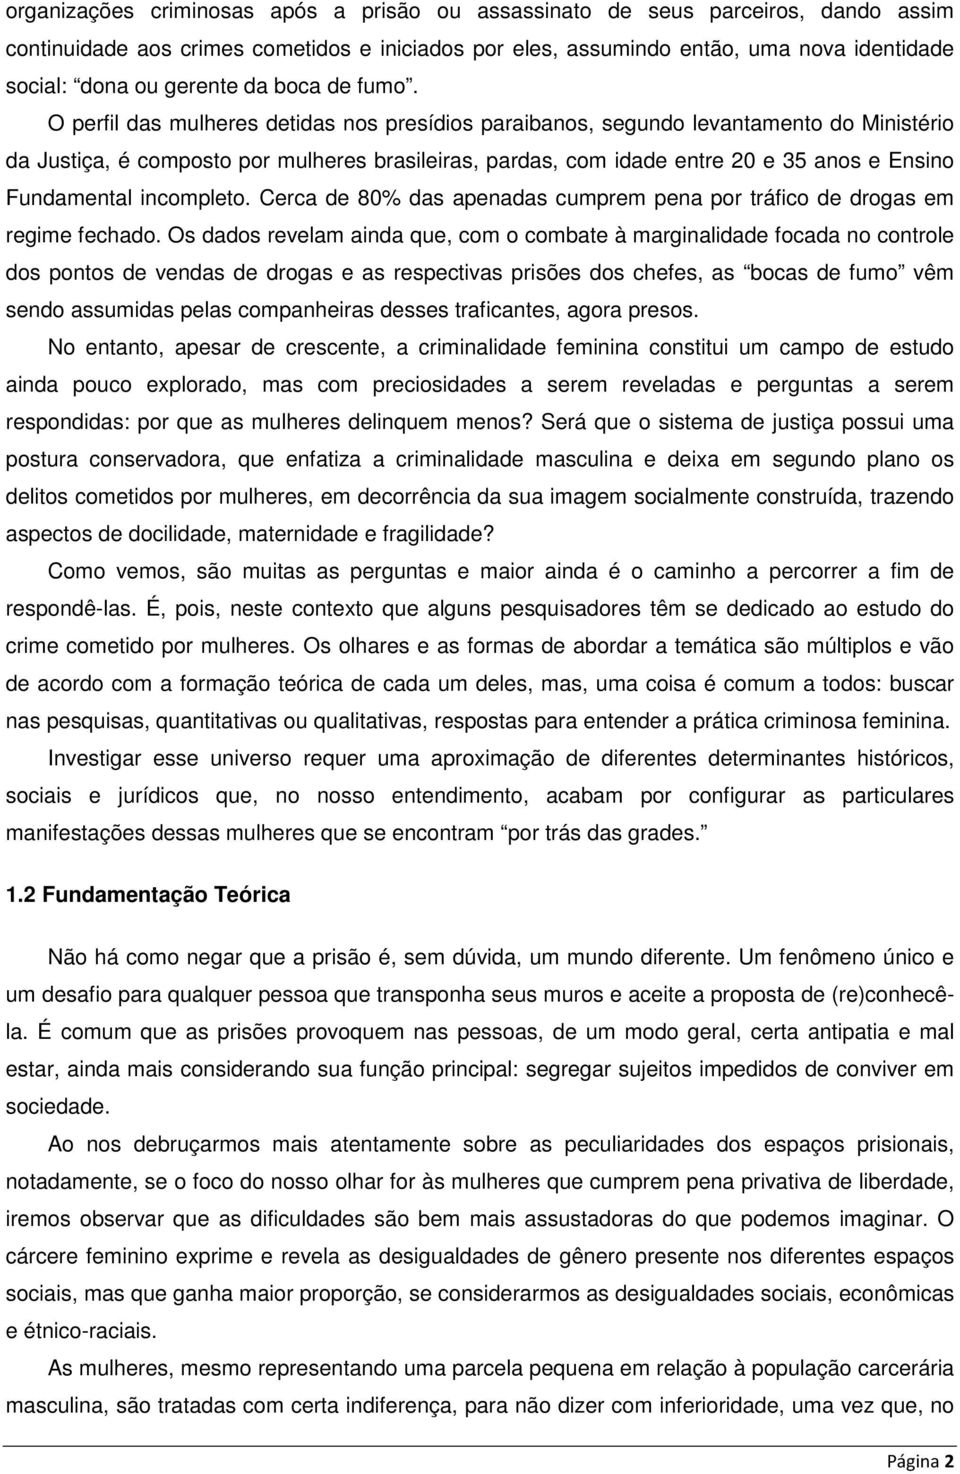 O perfil das mulheres detidas nos presídios paraibanos, segundo levantamento do Ministério da Justiça, é composto por mulheres brasileiras, pardas, com idade entre 20 e 35 anos e Ensino Fundamental